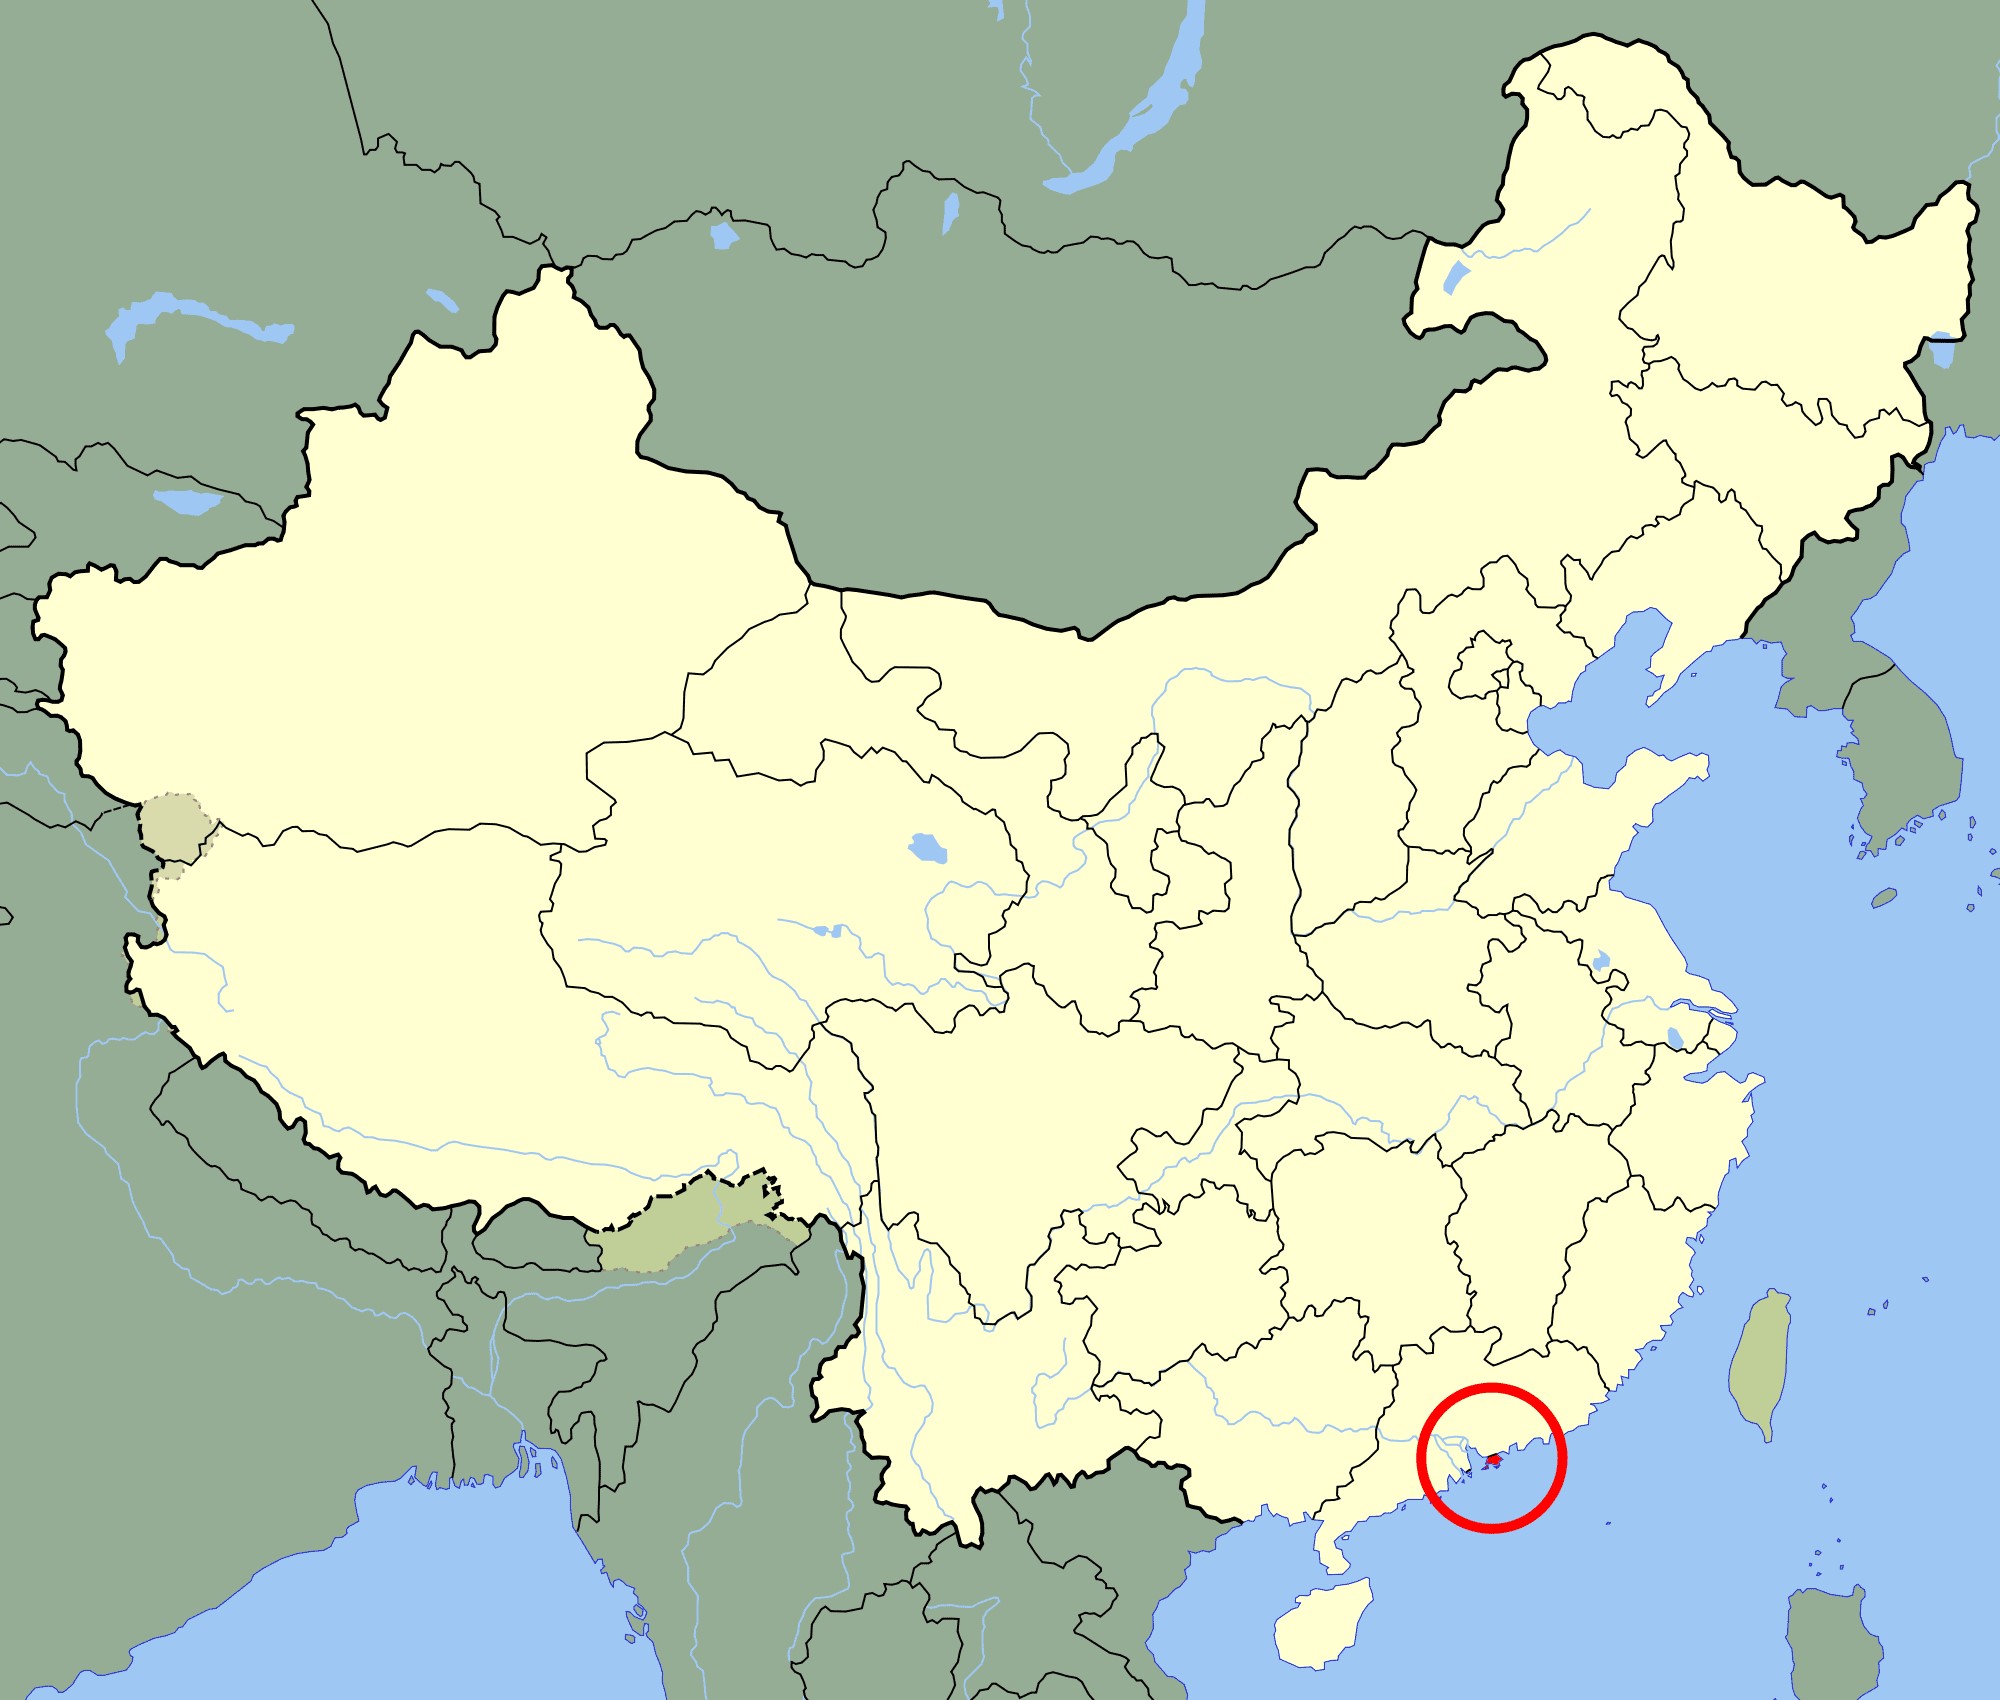 เขตบริหารพิเศษฮ่องกงแห่งสาธารณรัฐประชาชนจีน (Hong Kong) -  กระทรวงการต่างประเทศ